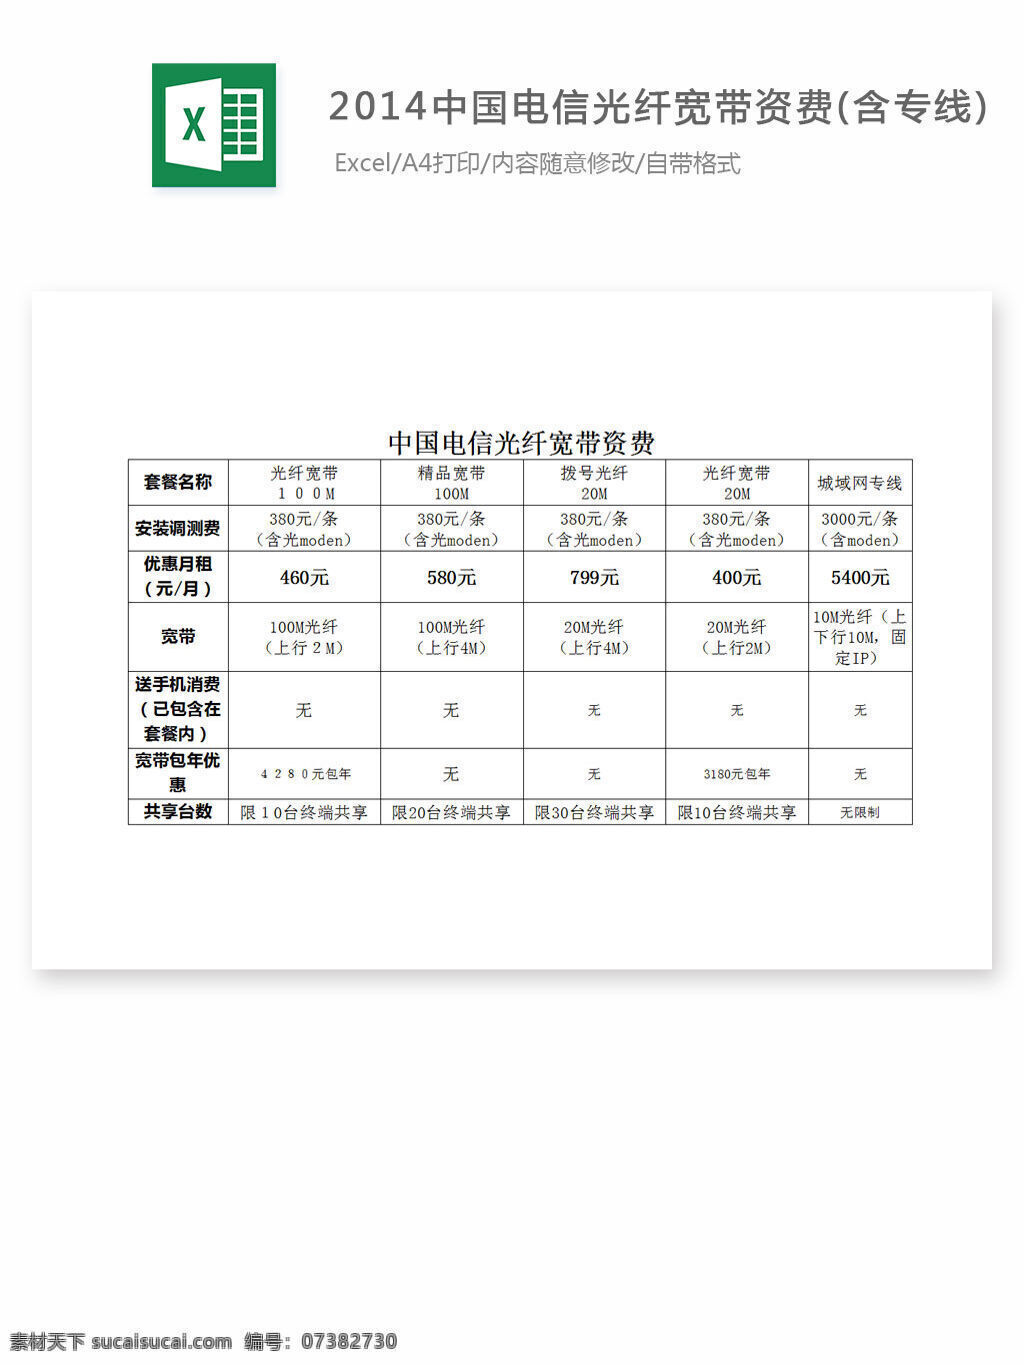 2014 中国电信 光纤 宽带 资费 含 专线 excel 表格 表格模板 表格设计 图表 宽带资费